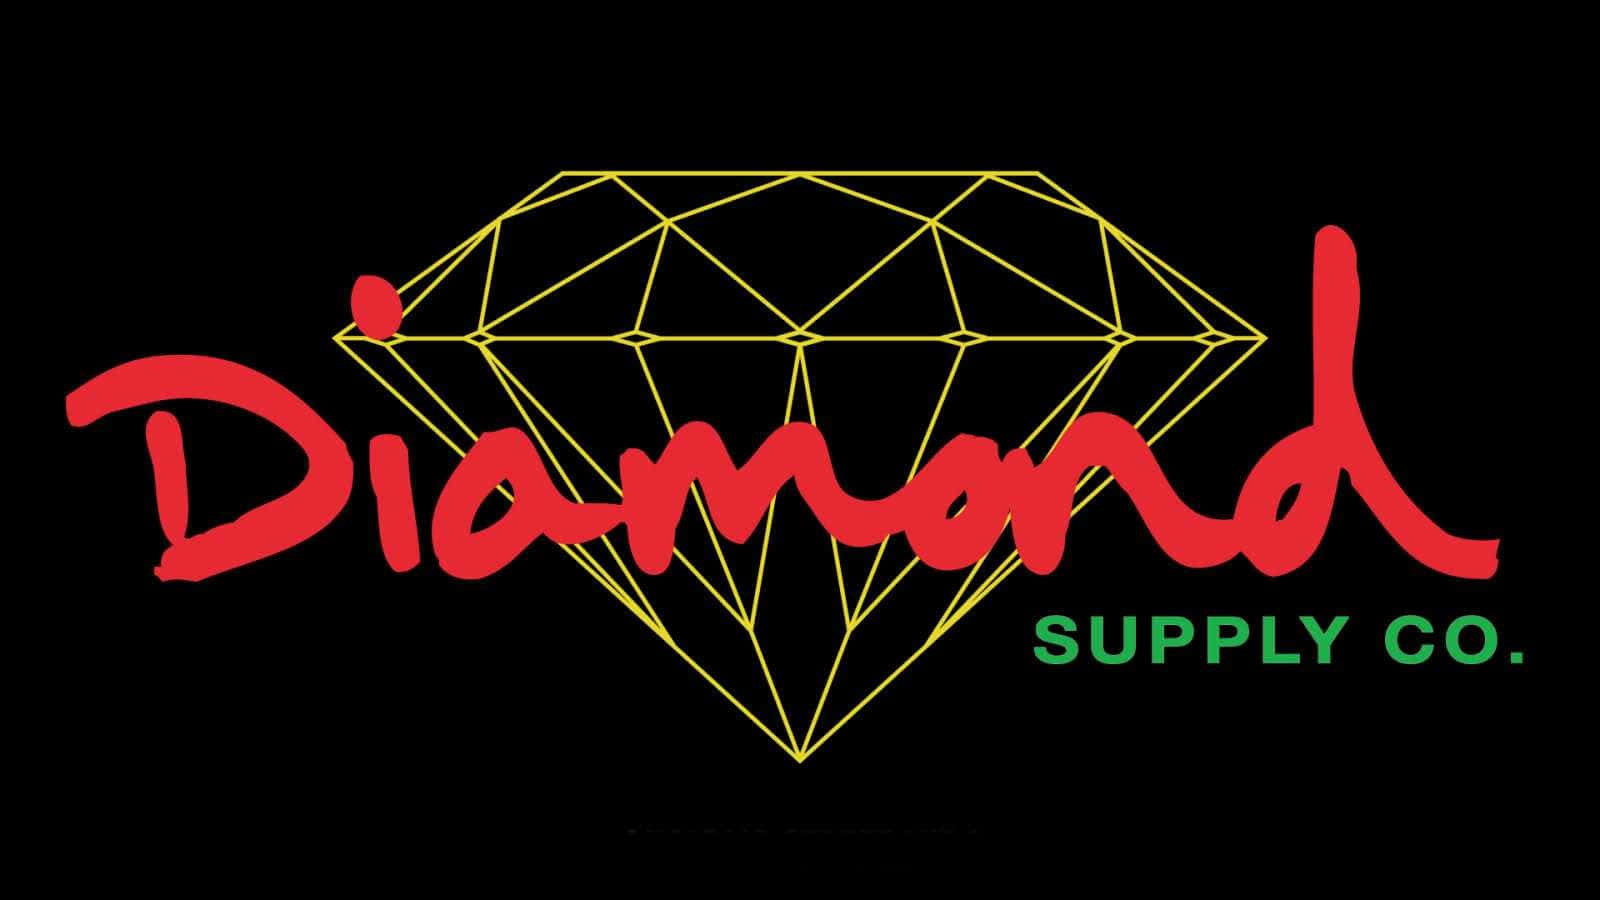 Logotipodiamond Supply Co En Color Carmesí Con La Palabra 